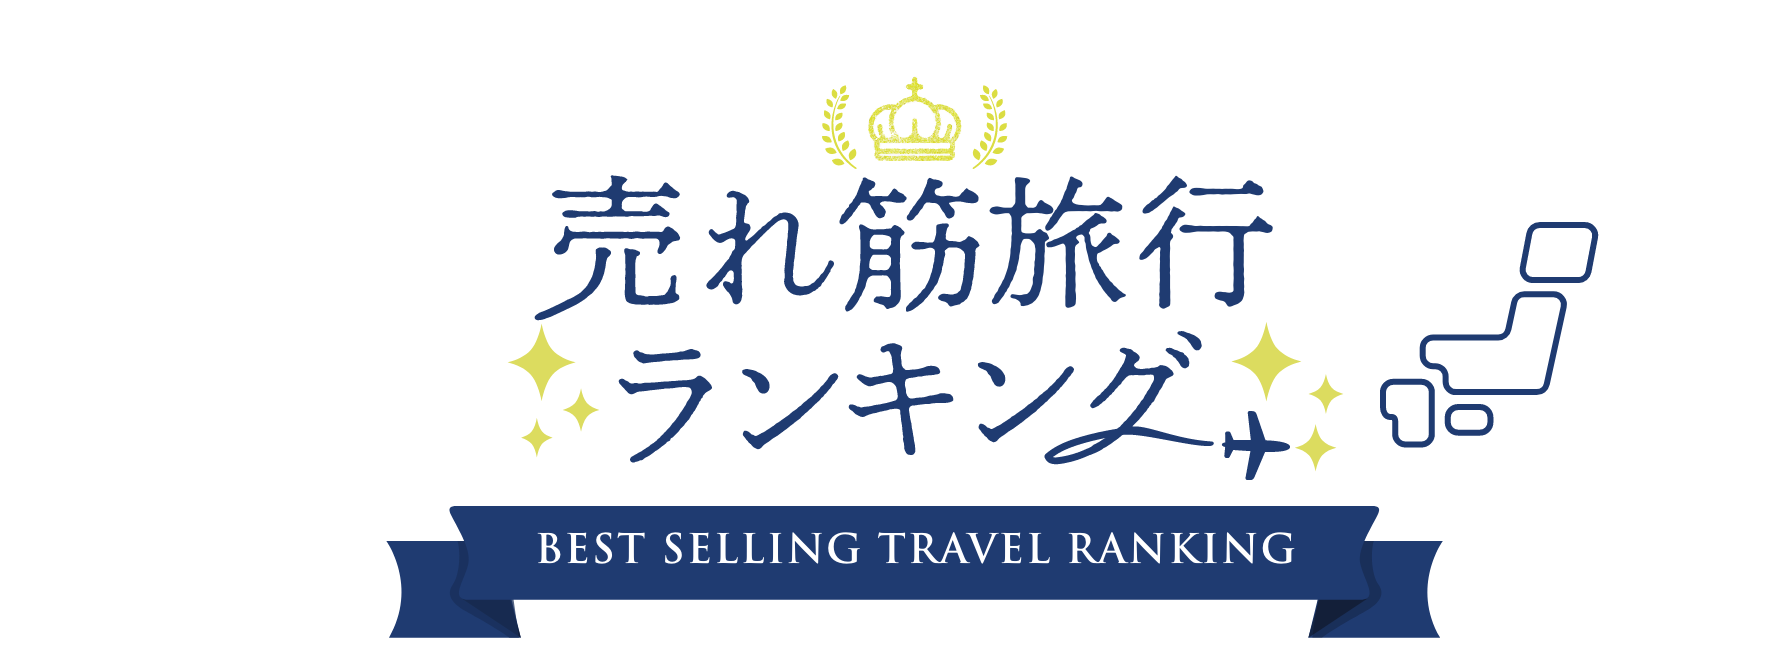 関西発 国内ツアー売れ筋旅行ランキング